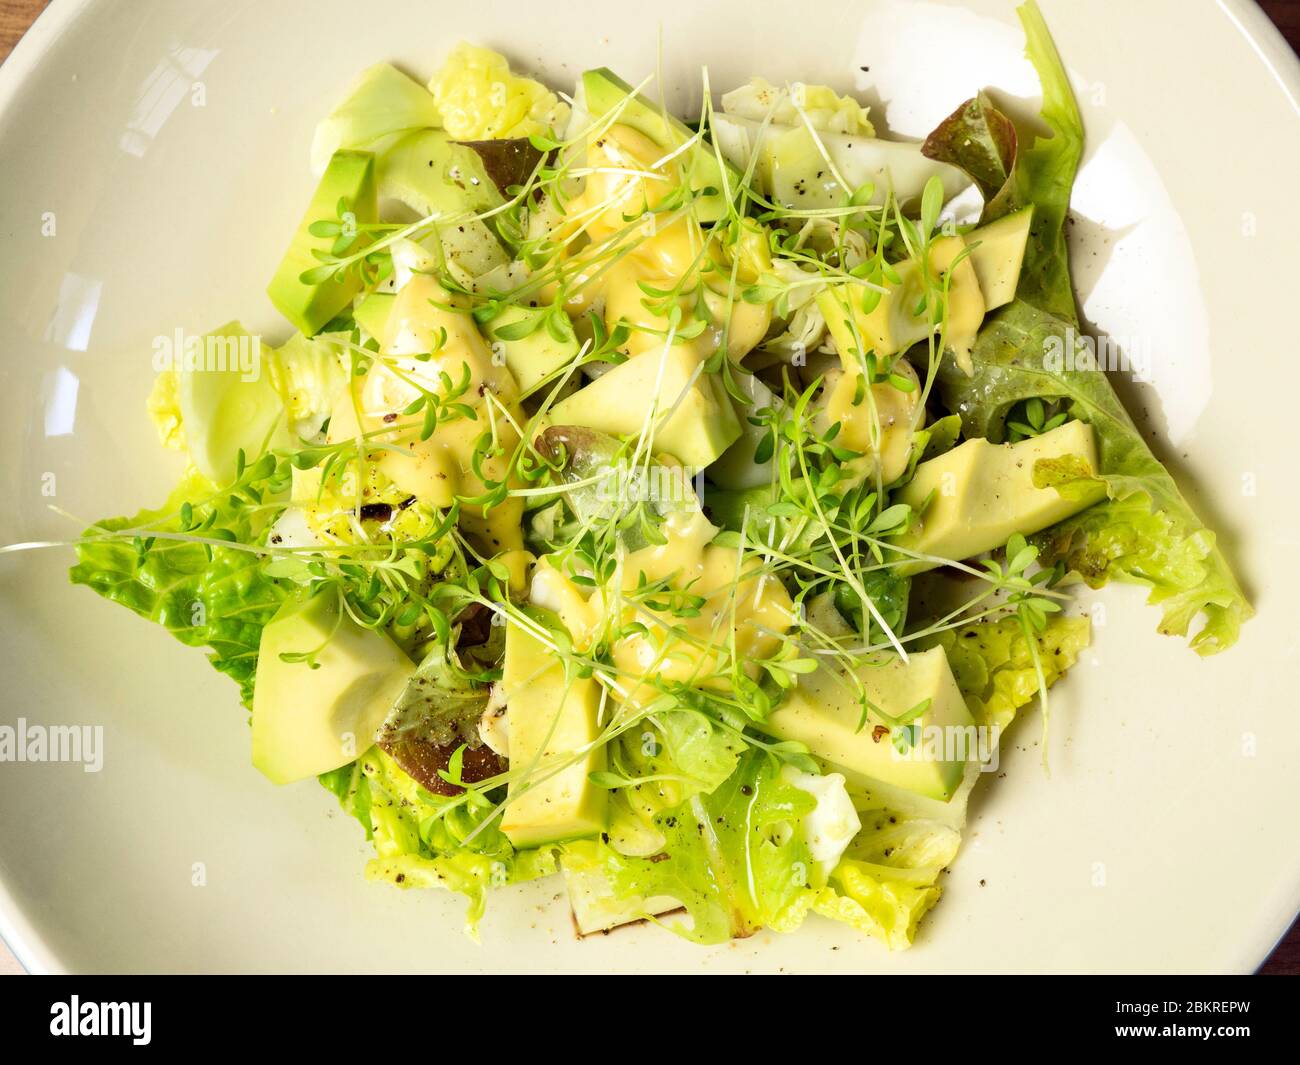 Insalata verde fresca di foglie di lattuga miste con pezzi di avocado e maionese fatte in casa con una guarnitura di cress Foto Stock